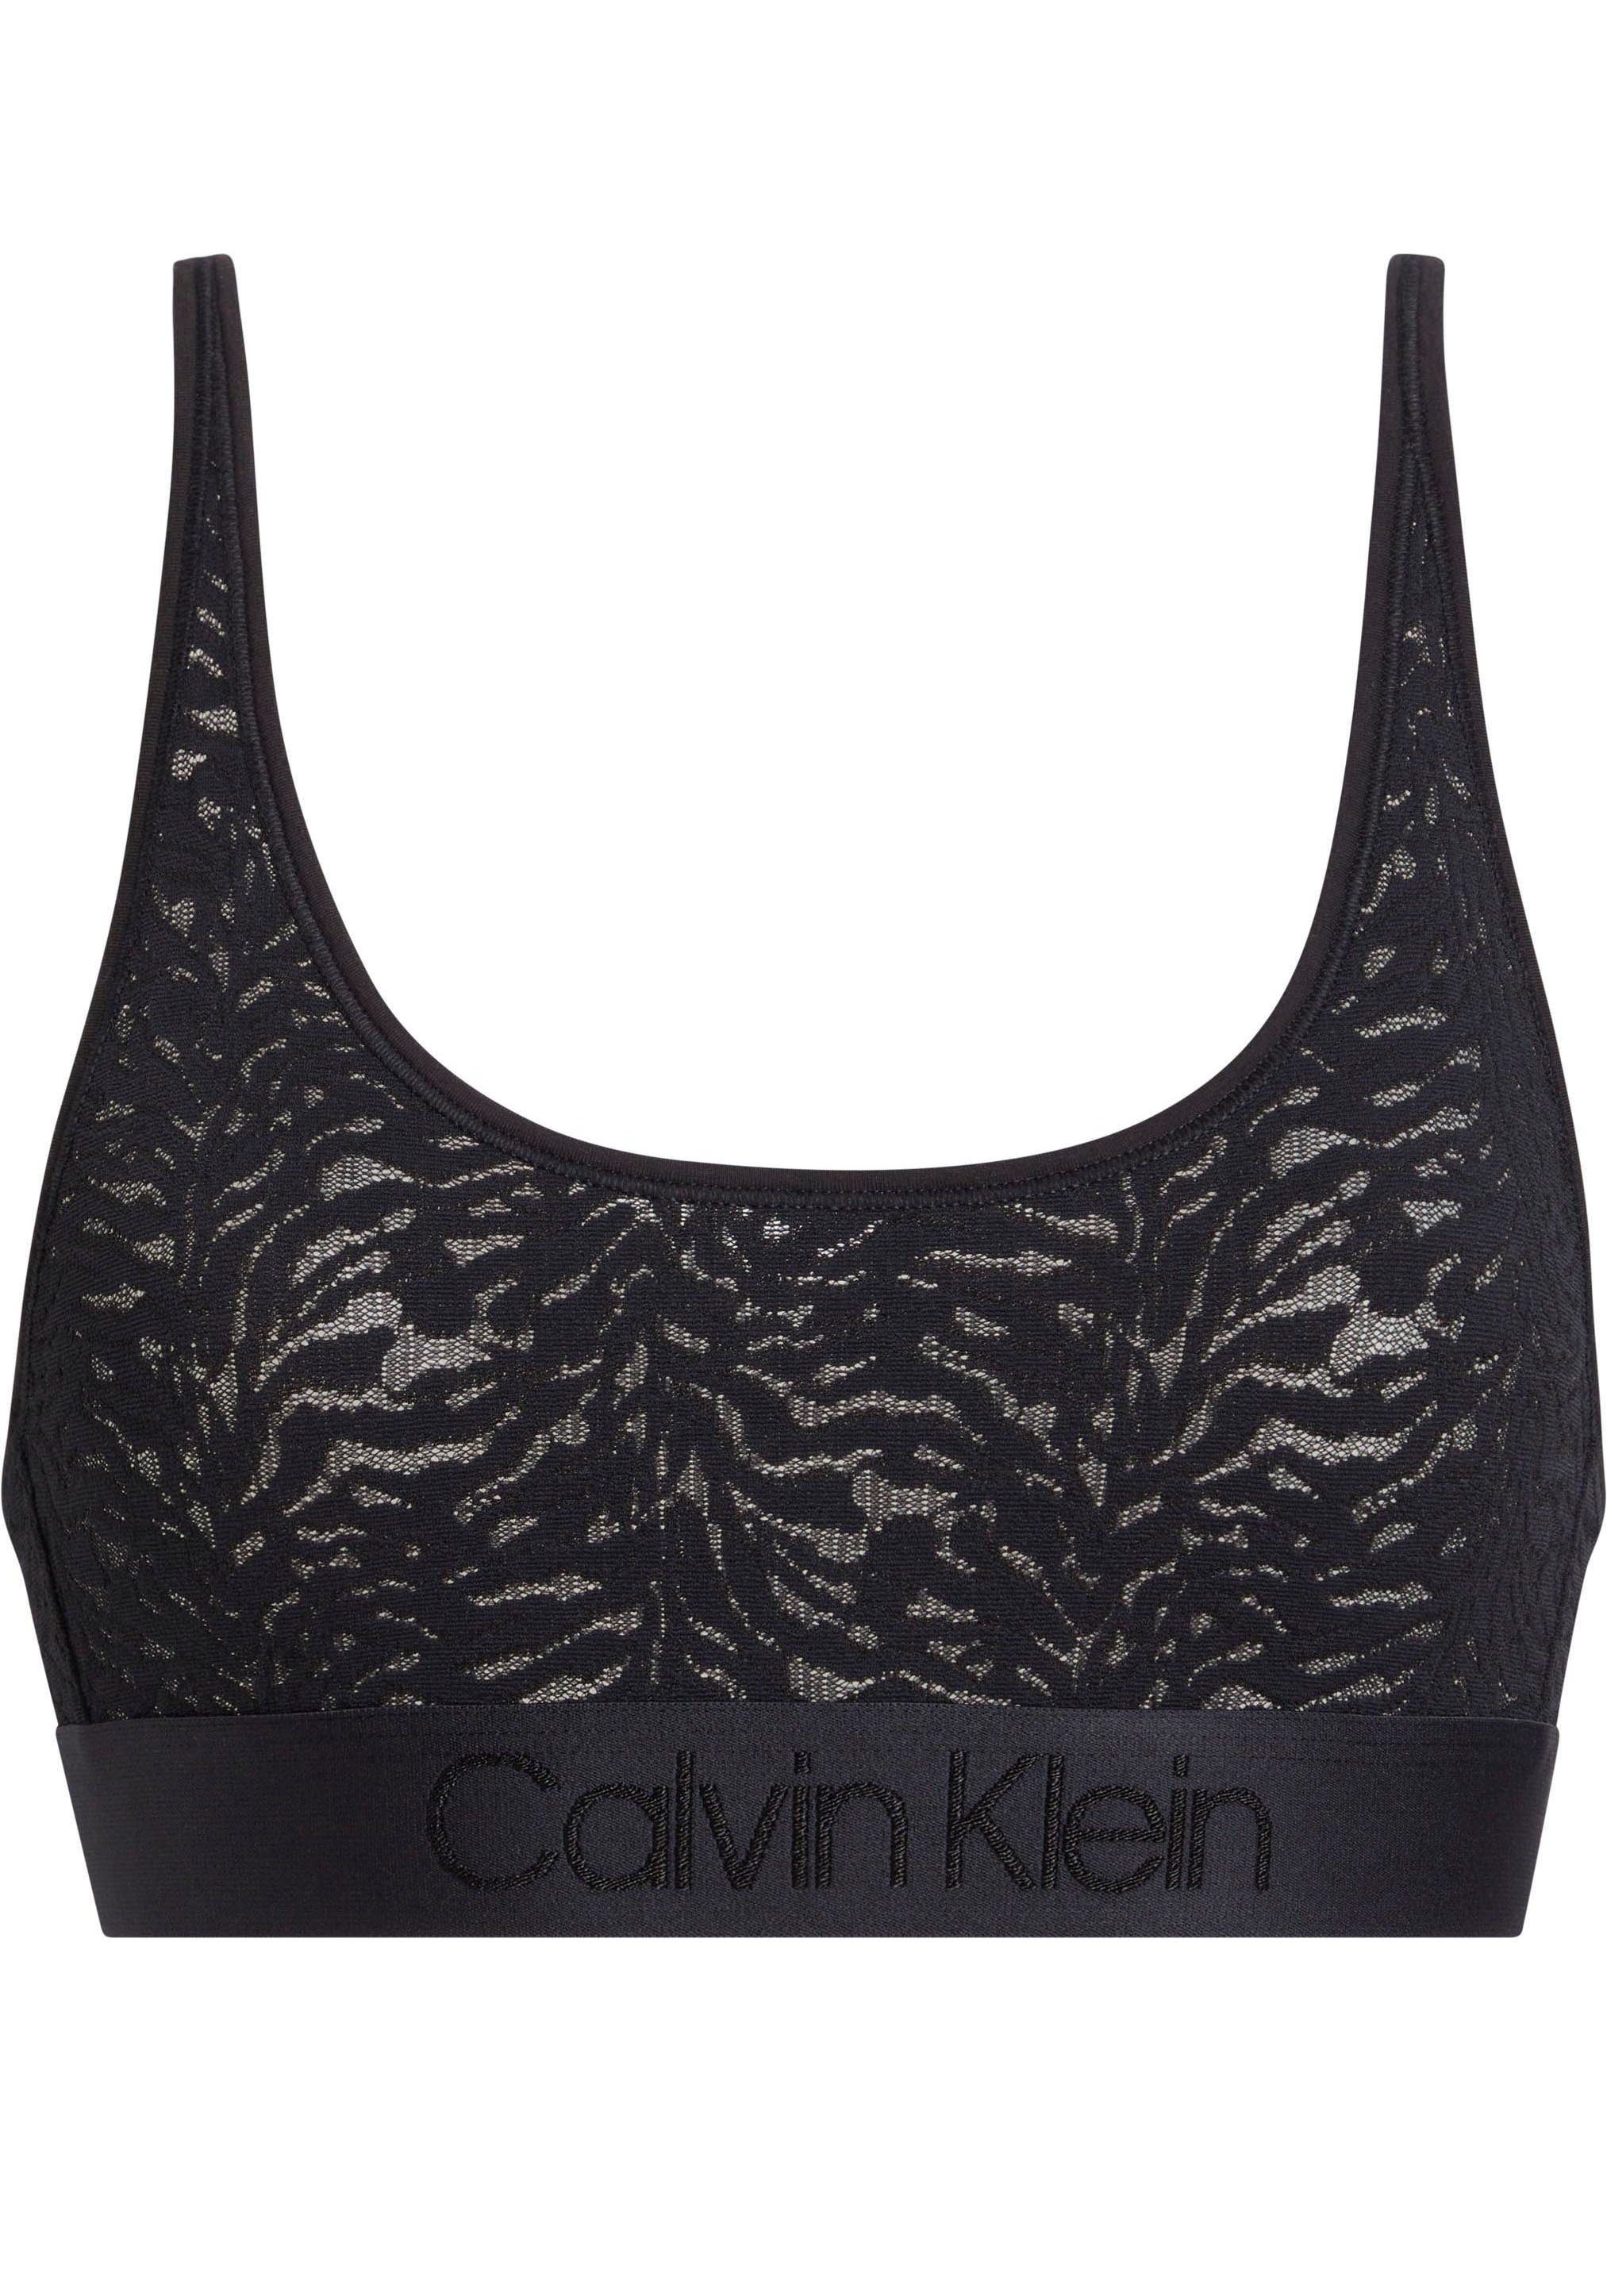 UNLINED Klein Spitze Calvin aus BLACK Underwear Bralette-BH BRALETTE